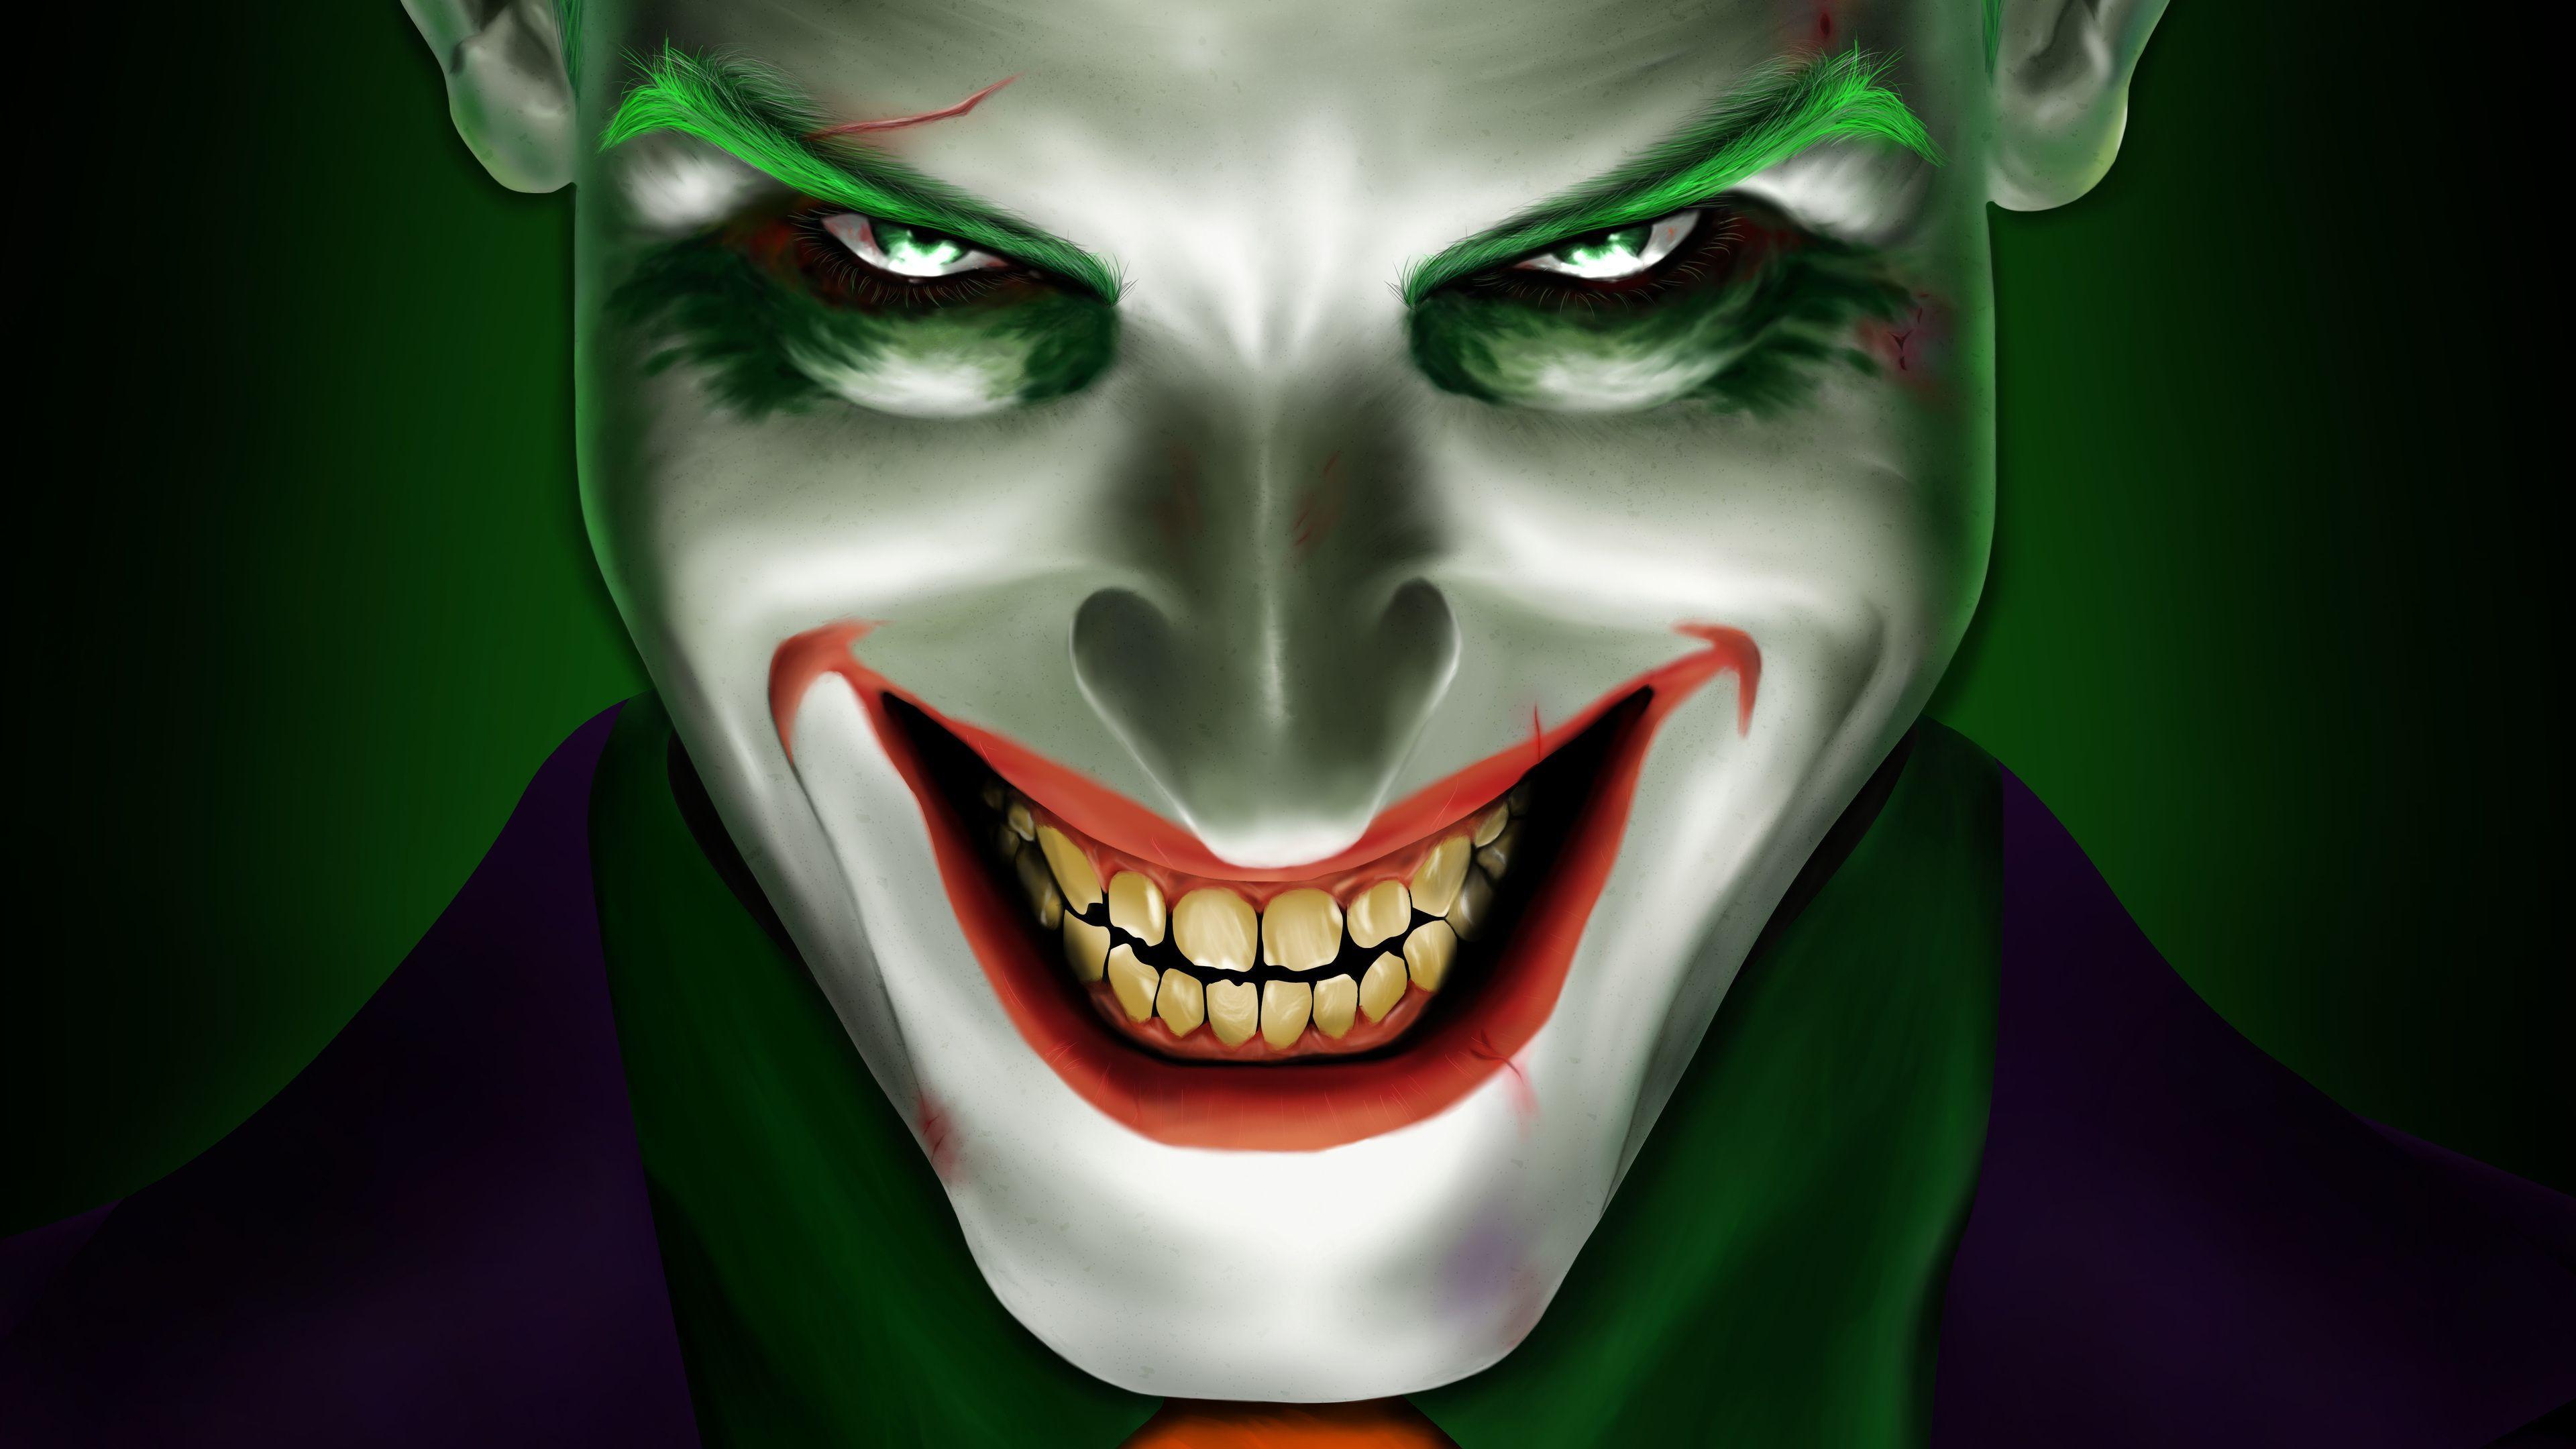 3840 x 2160 · jpeg - Joker Mouth HD Wallpapers - Wallpaper Cave